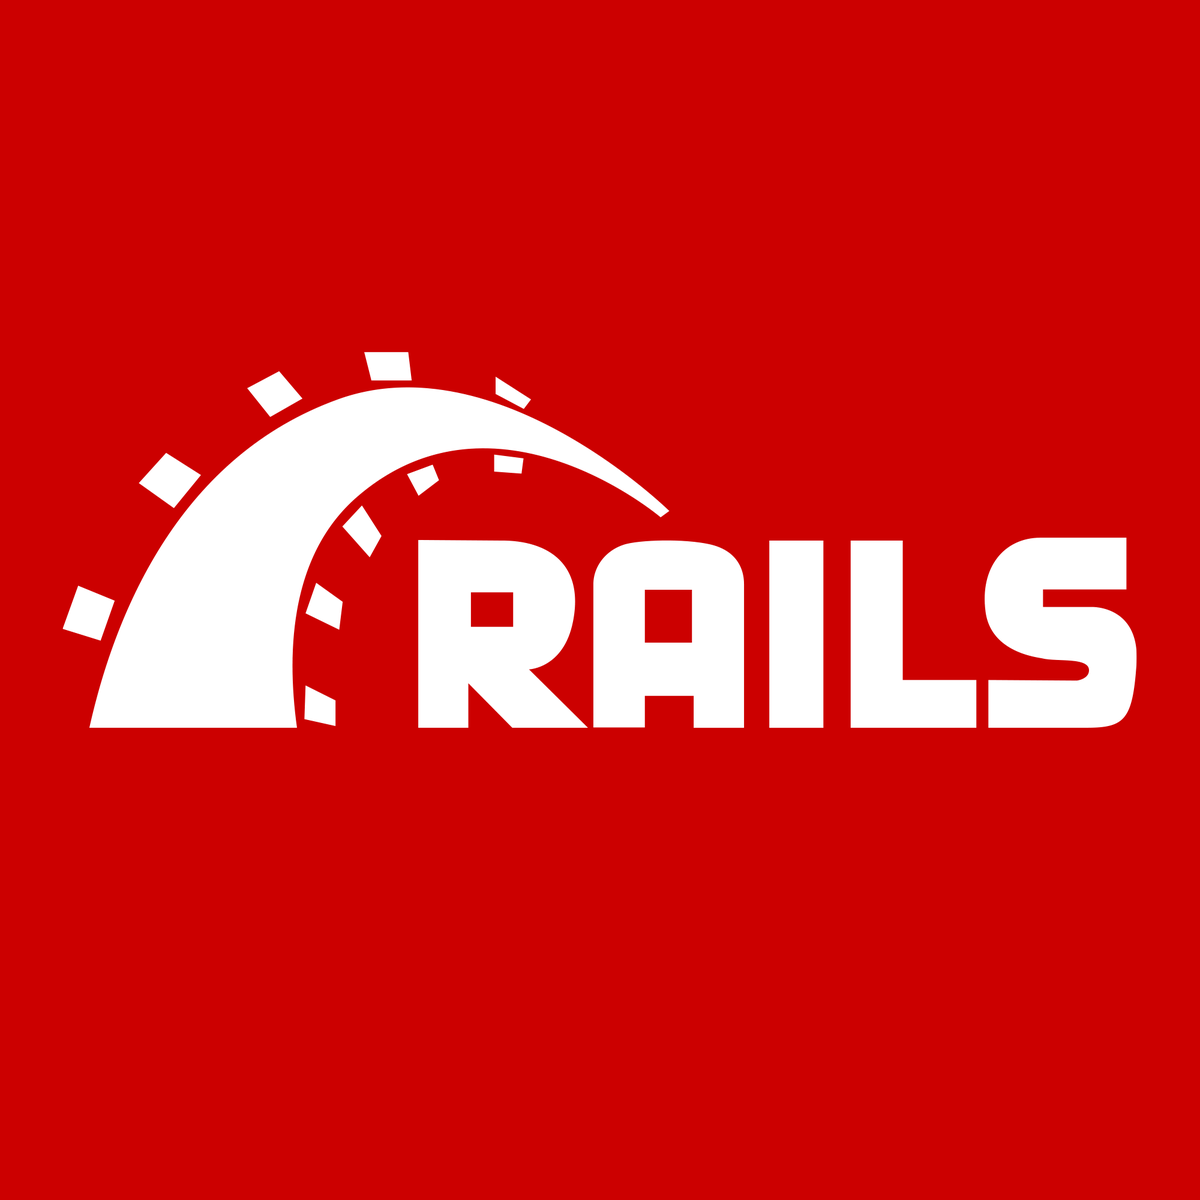 Rails Logo - Ruby on Rails do you like our new logo?